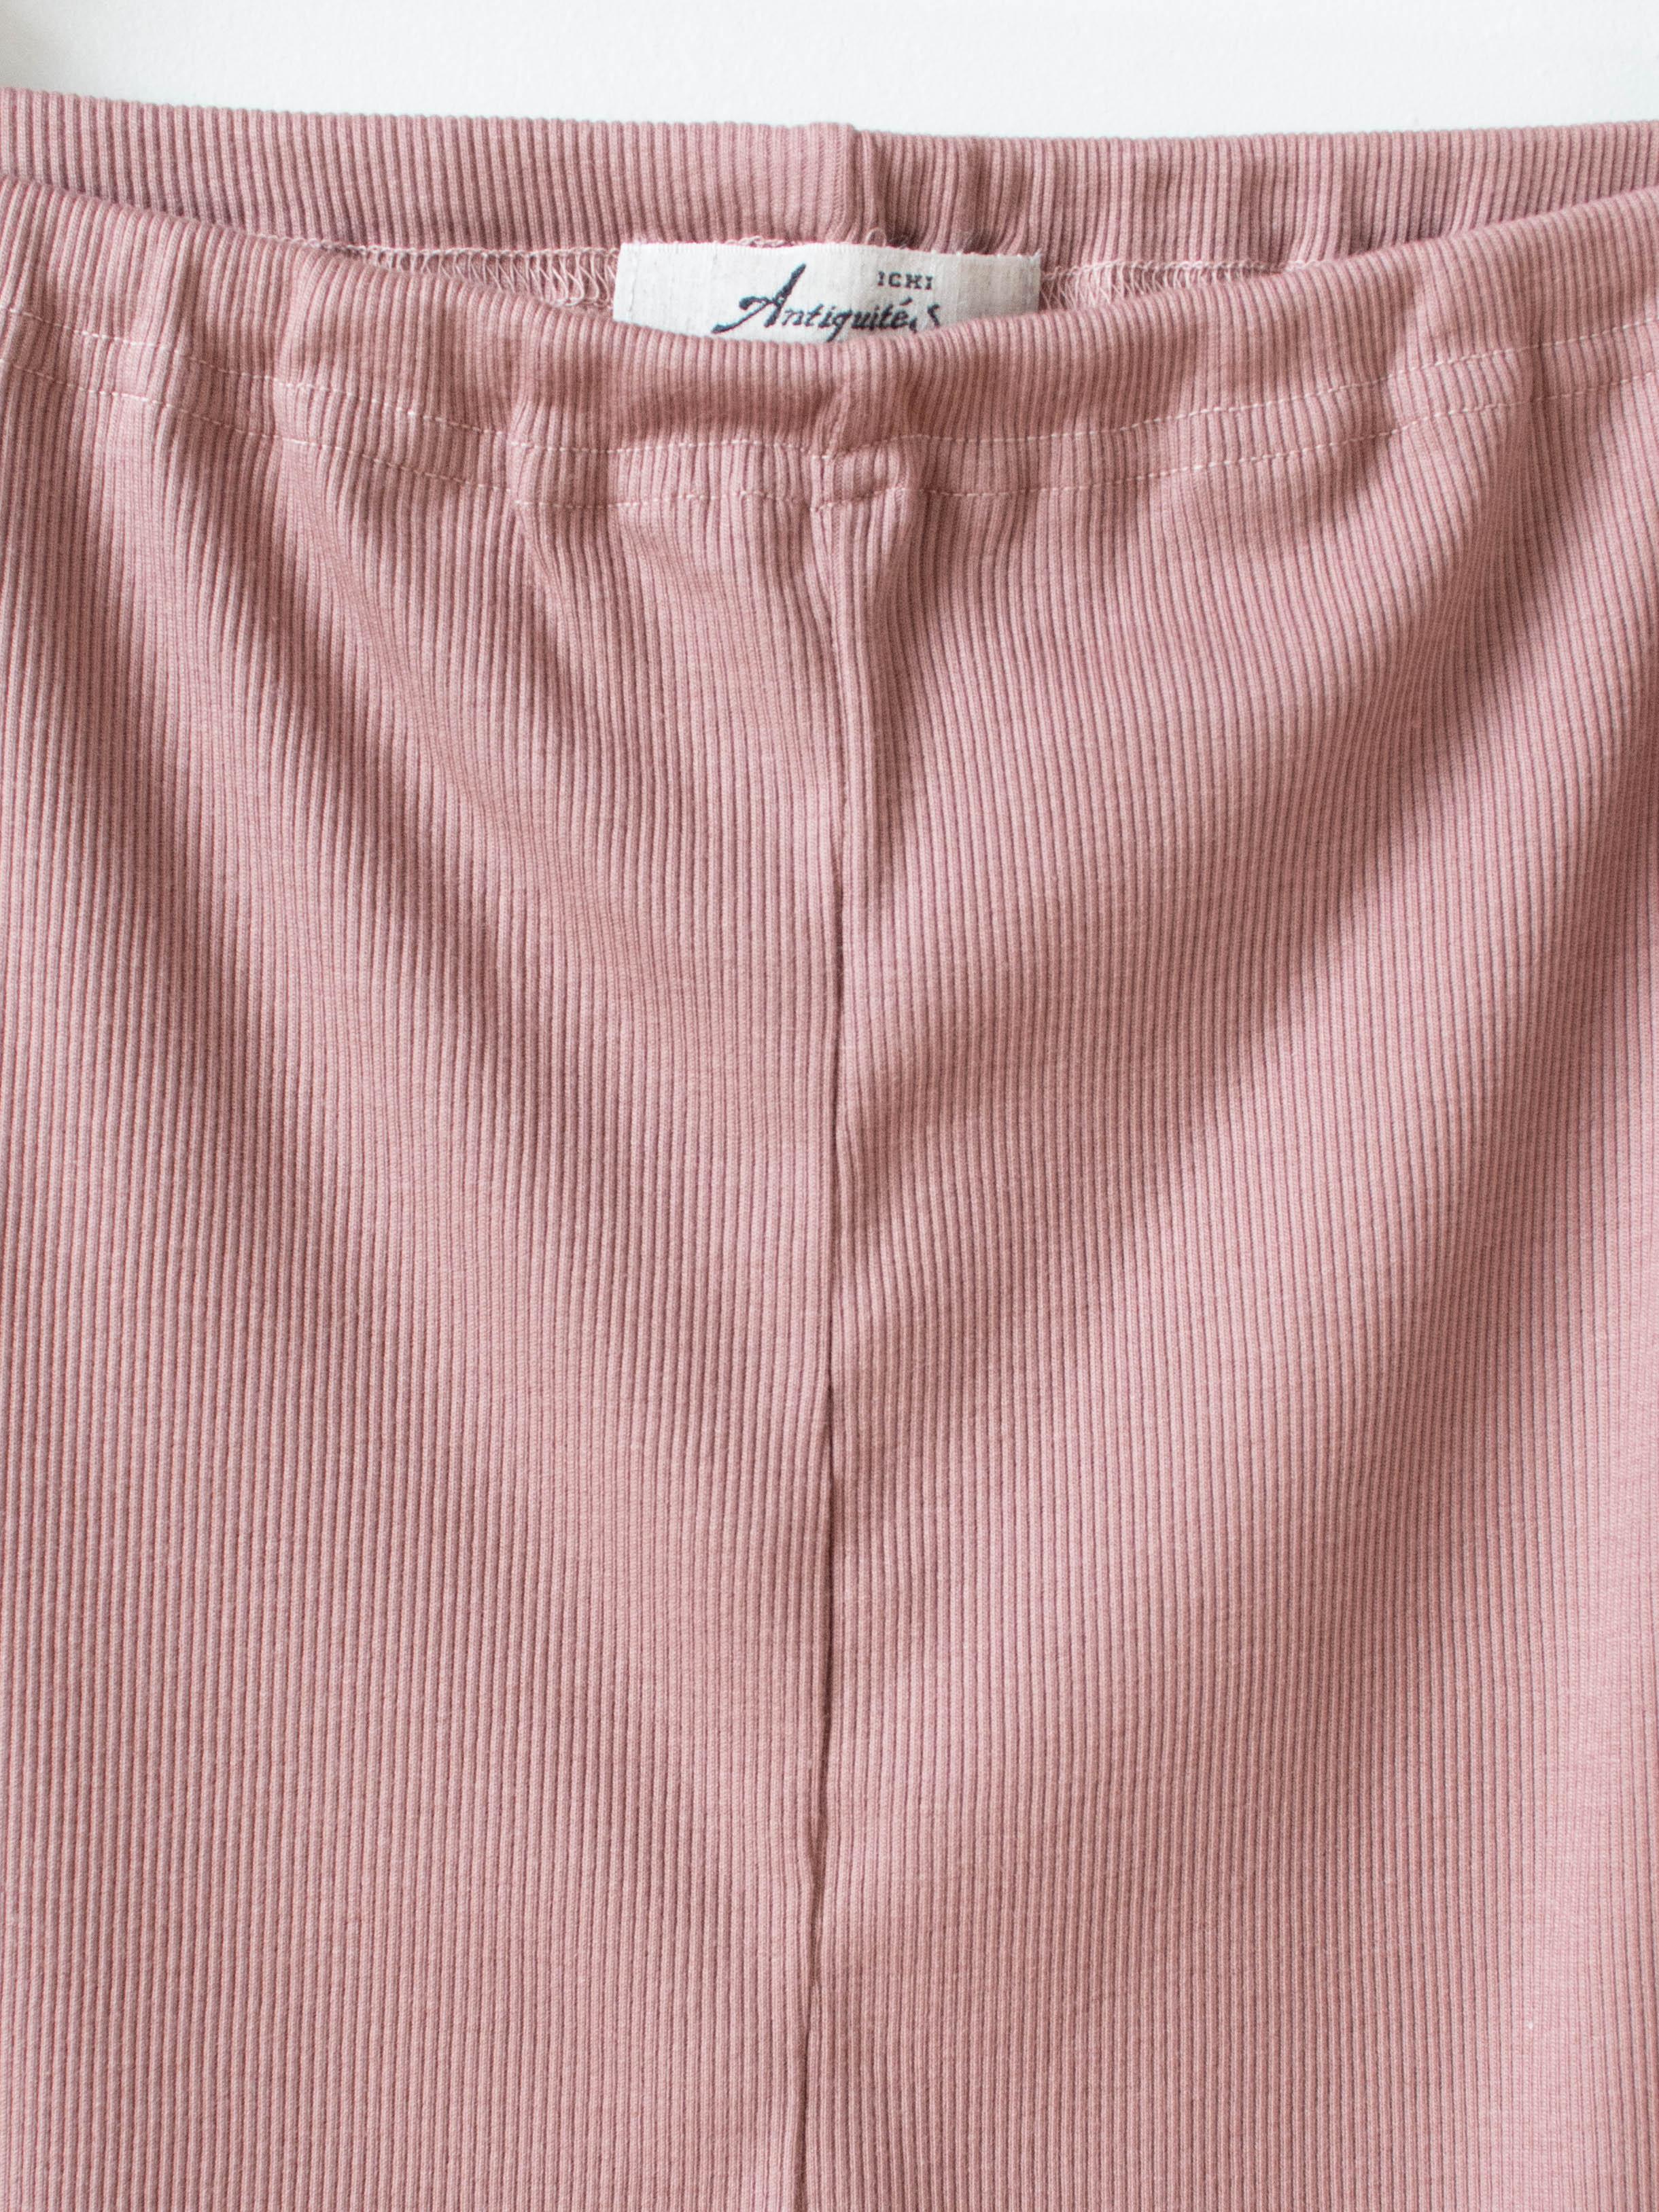 Namu Shop - Ichi Antiquites Rib Cotton Silk Leggings - Dusty Pink